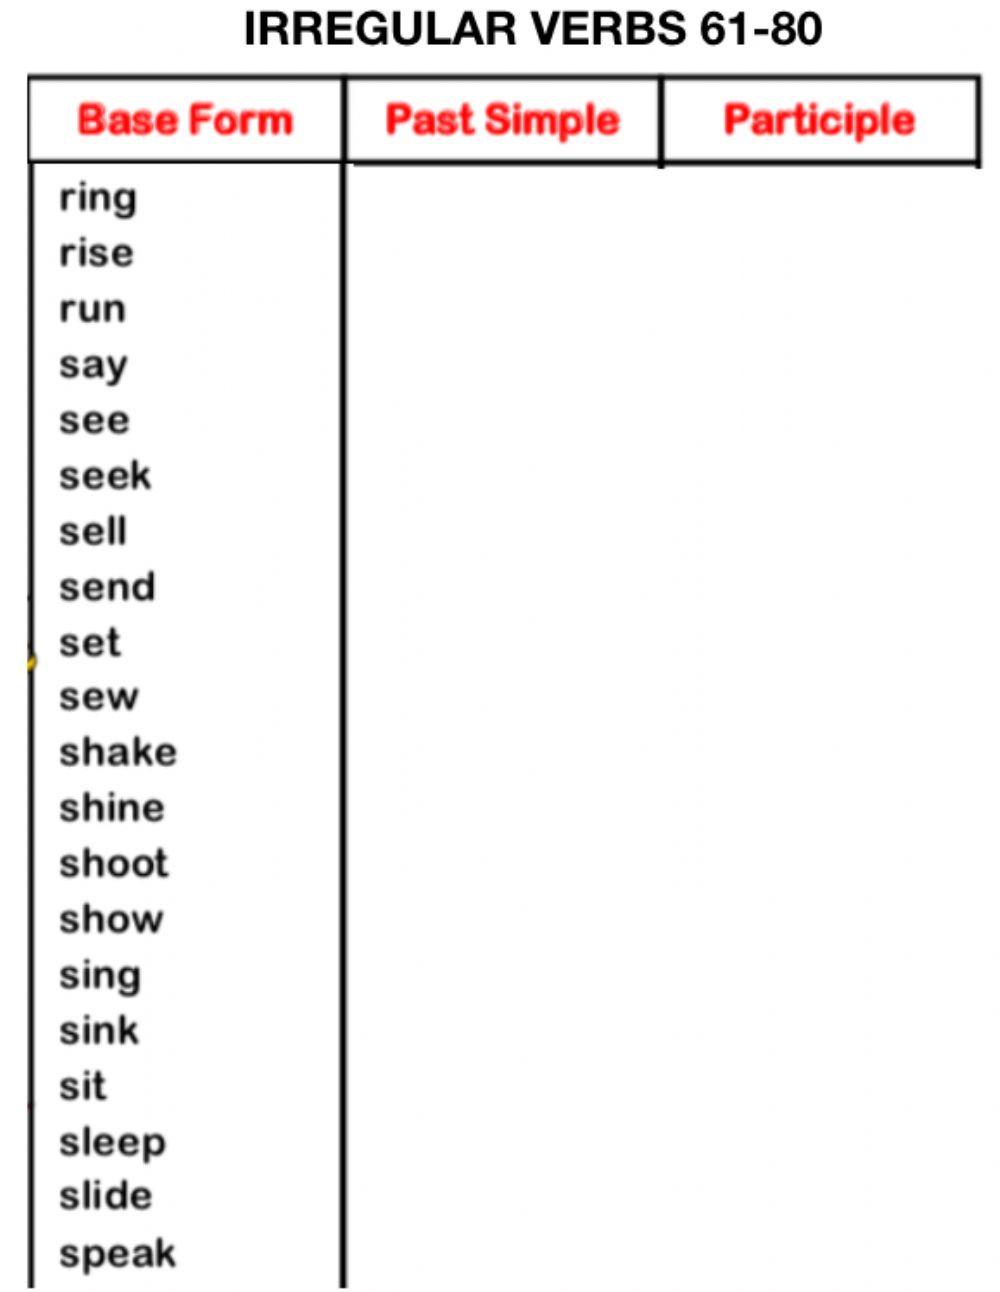 Irregular verbs 61-80